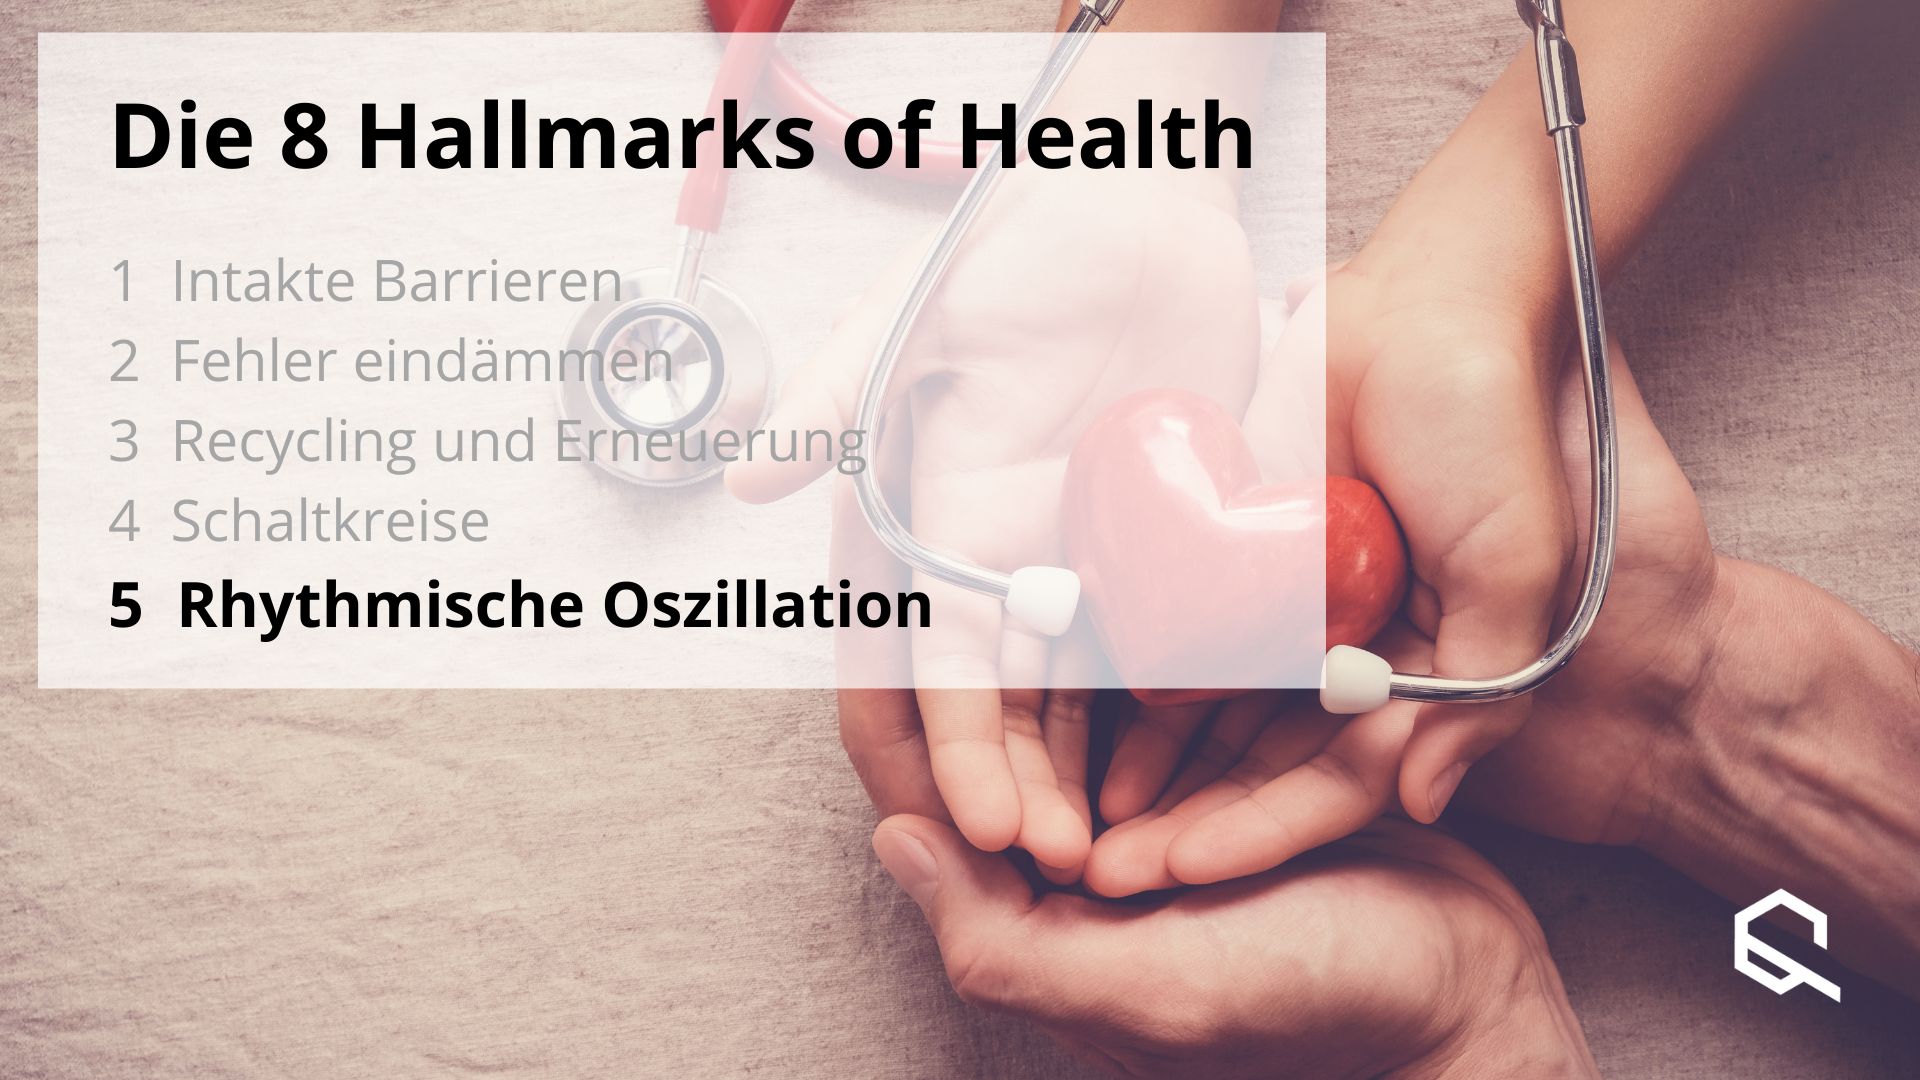 Hallmarksofhealth 5 Oszillation